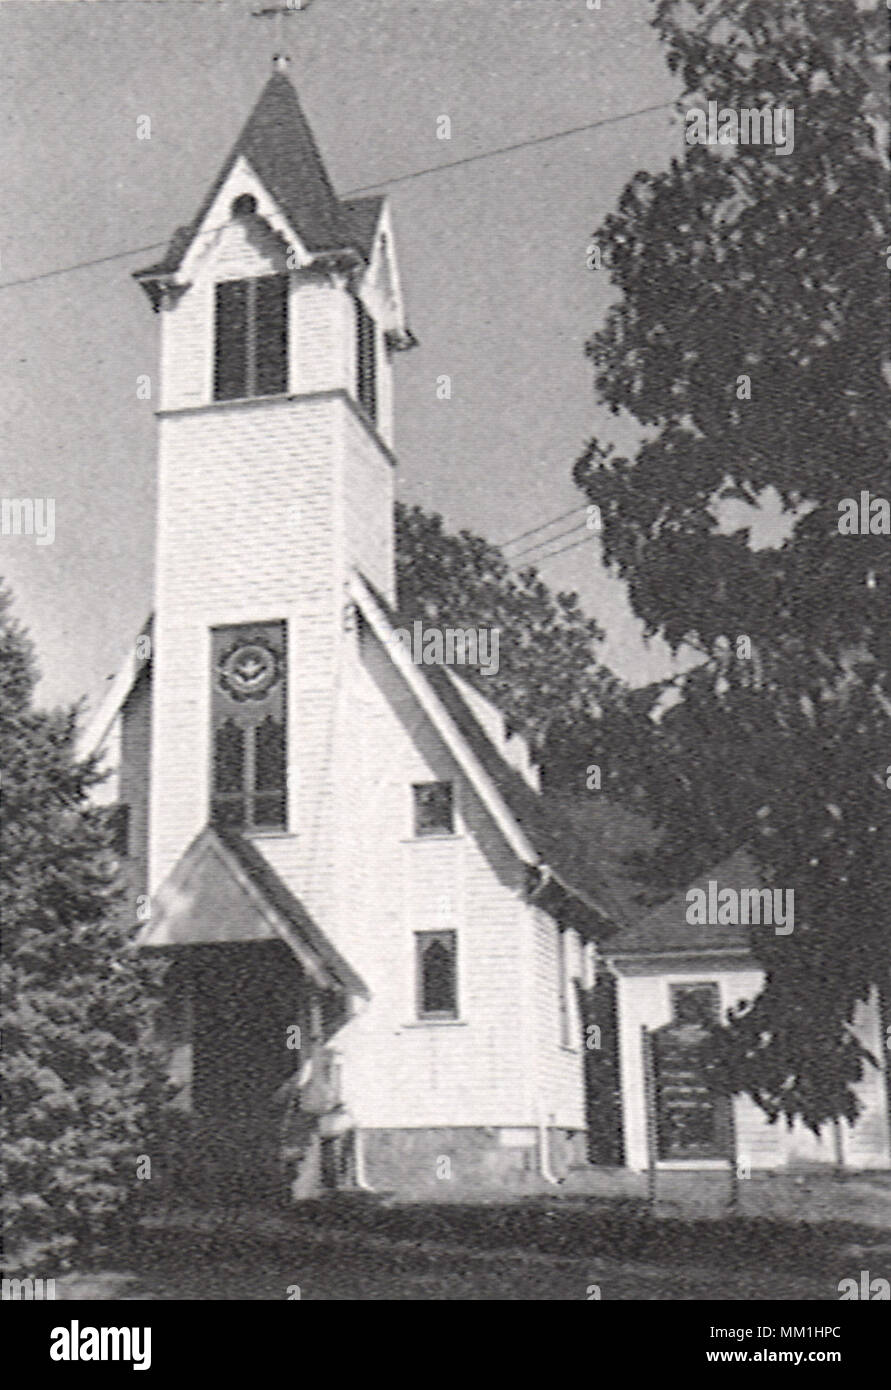 Zion Evangelical Lutheran. Bristol. 1950 Stock Photo